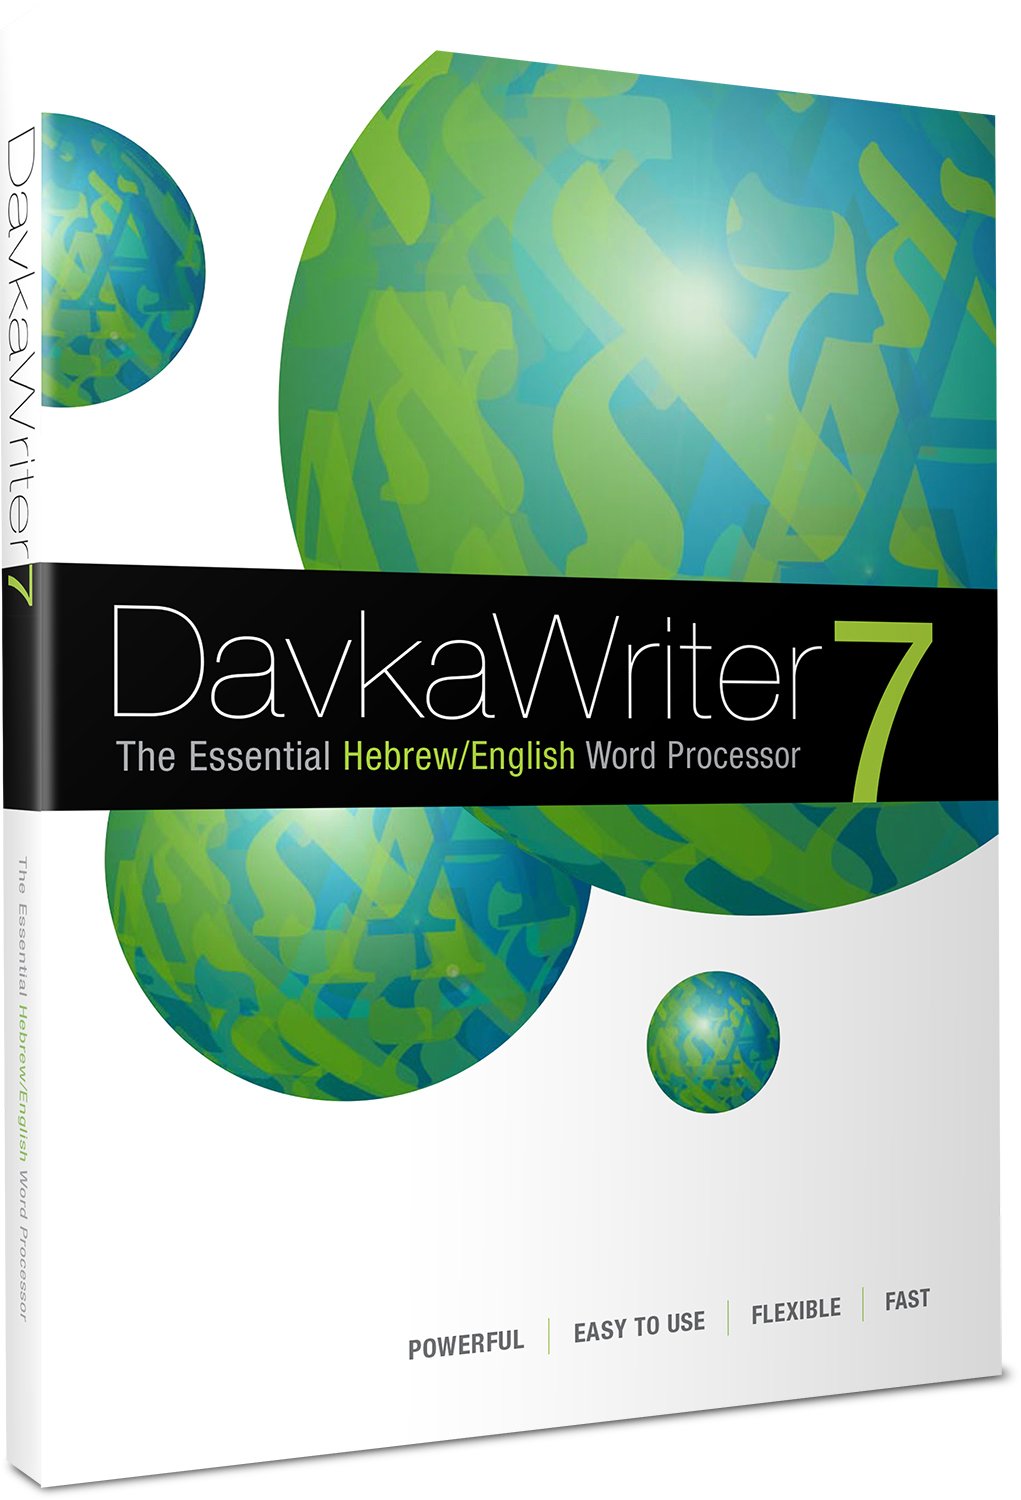 Davkawriter 7